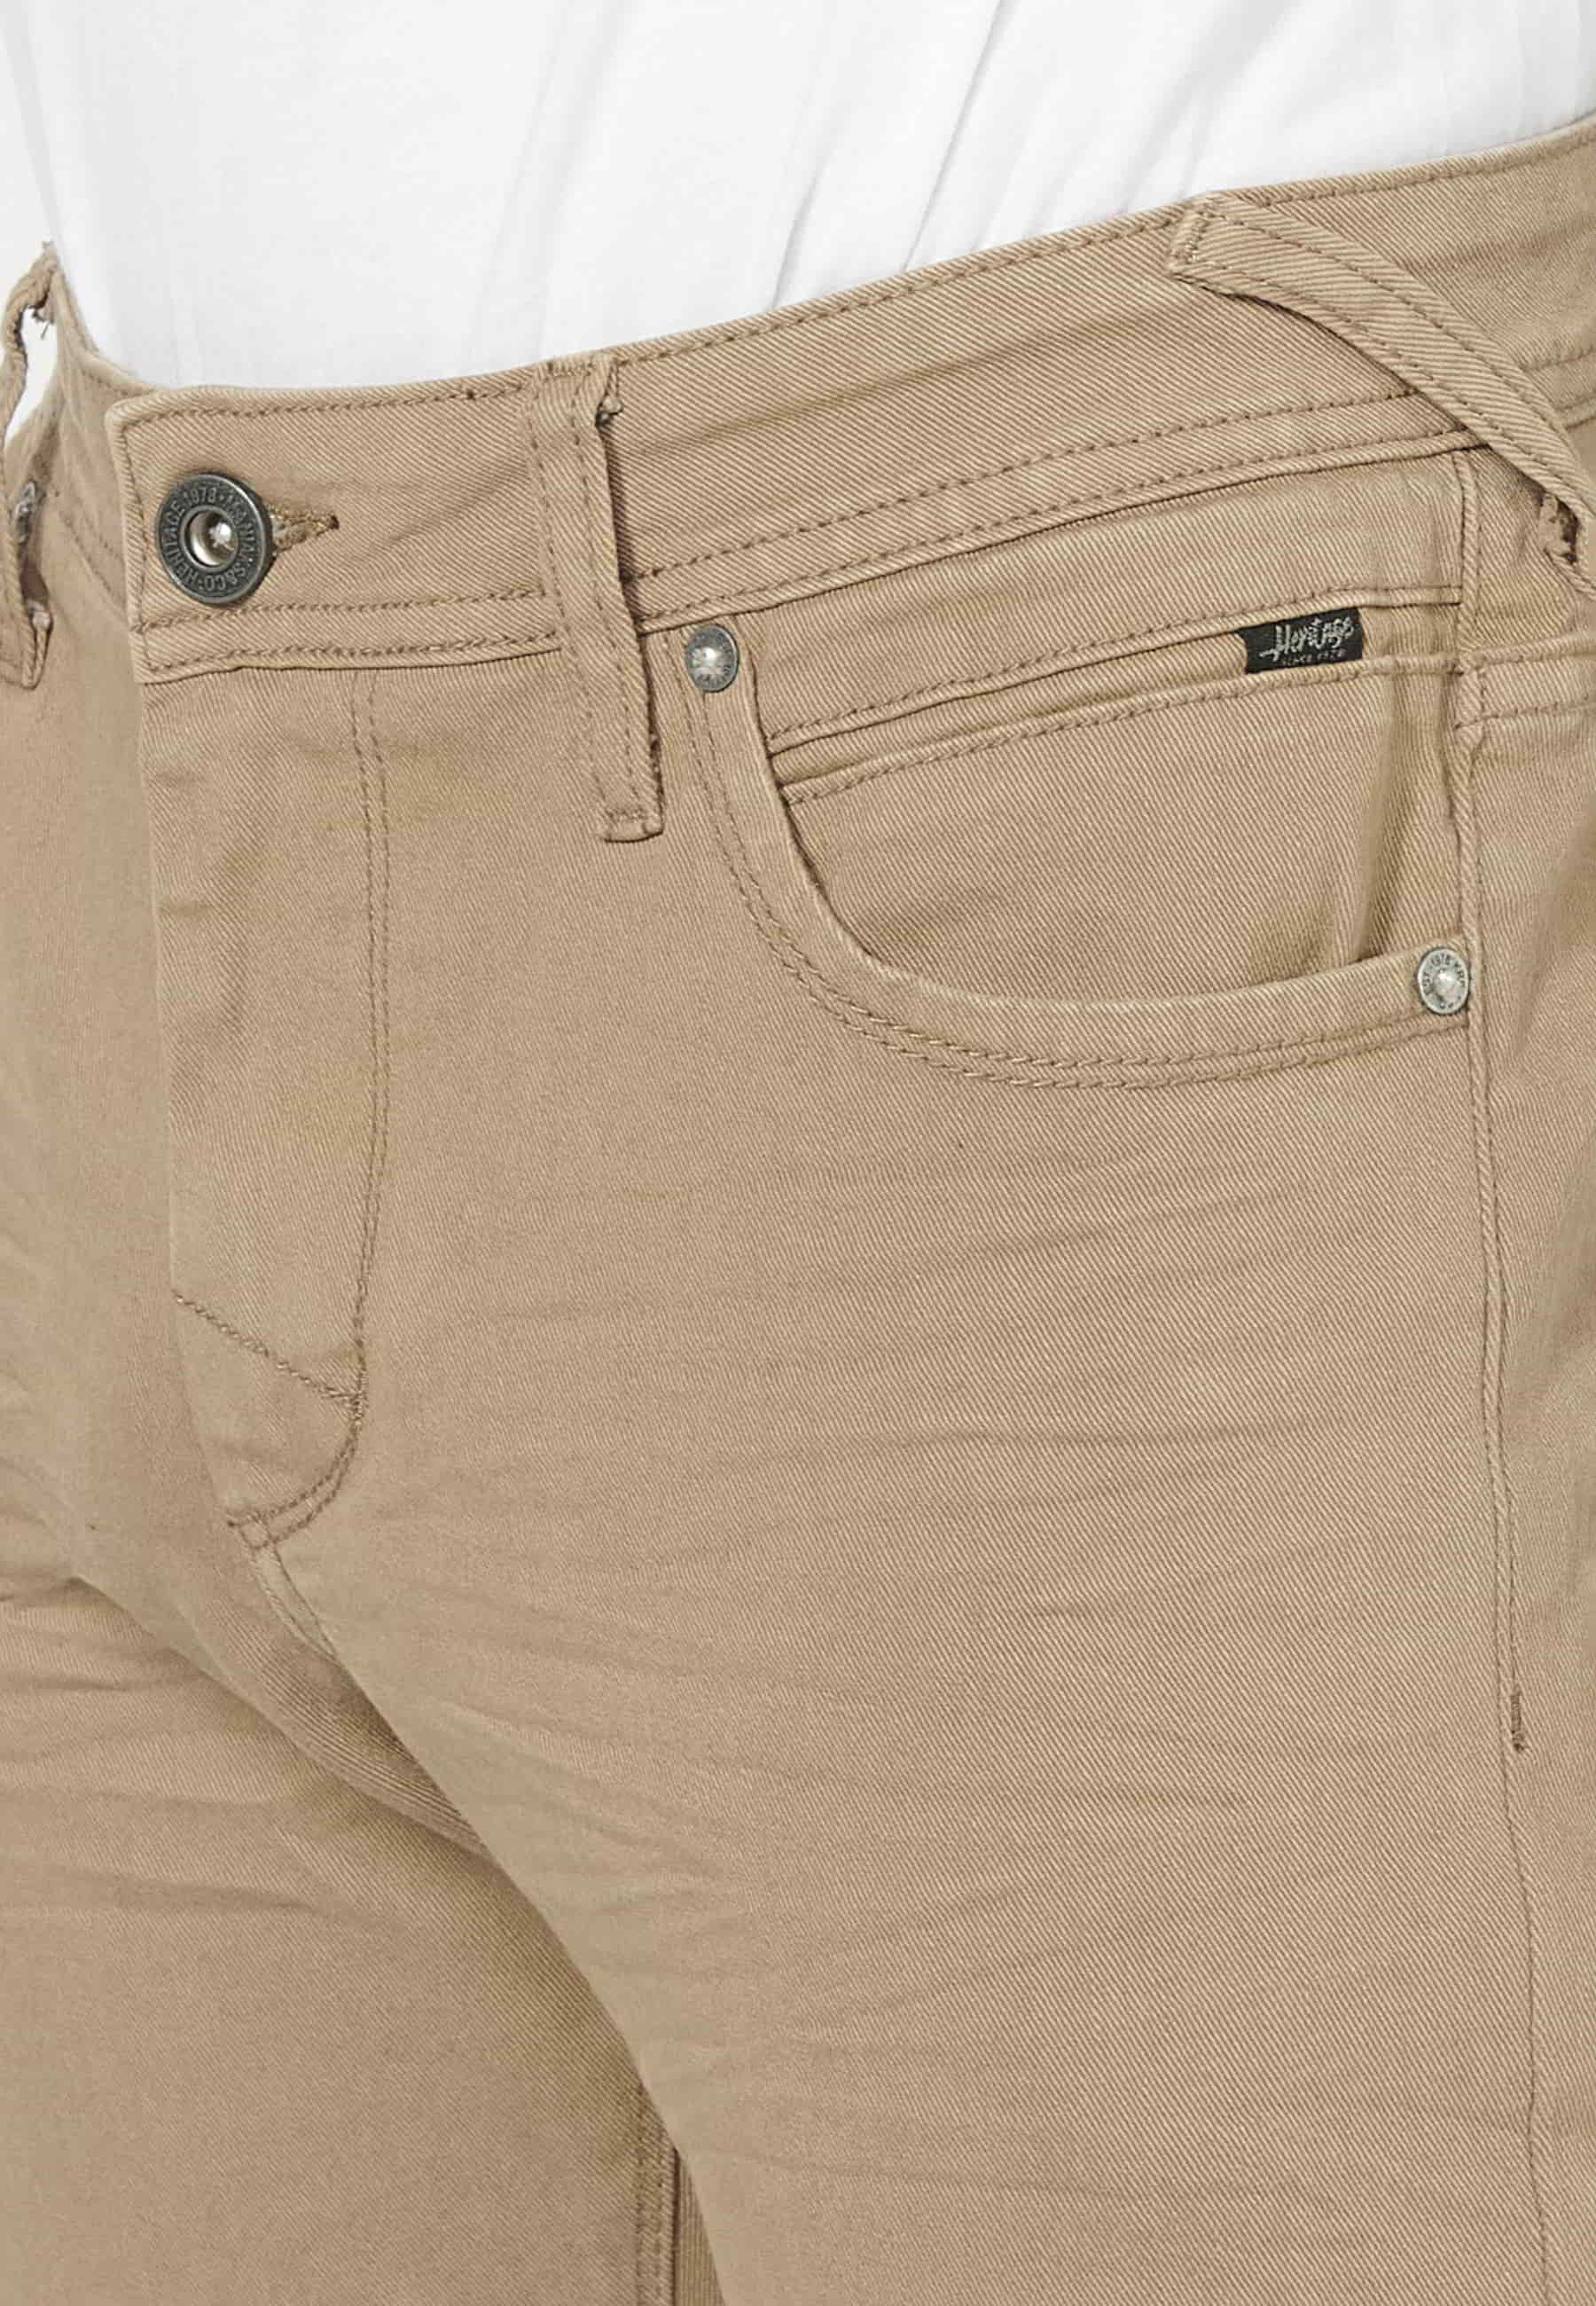 Pantalons llargs strech regular fit, amb cinc butxaques, color Beige, per a Home 1